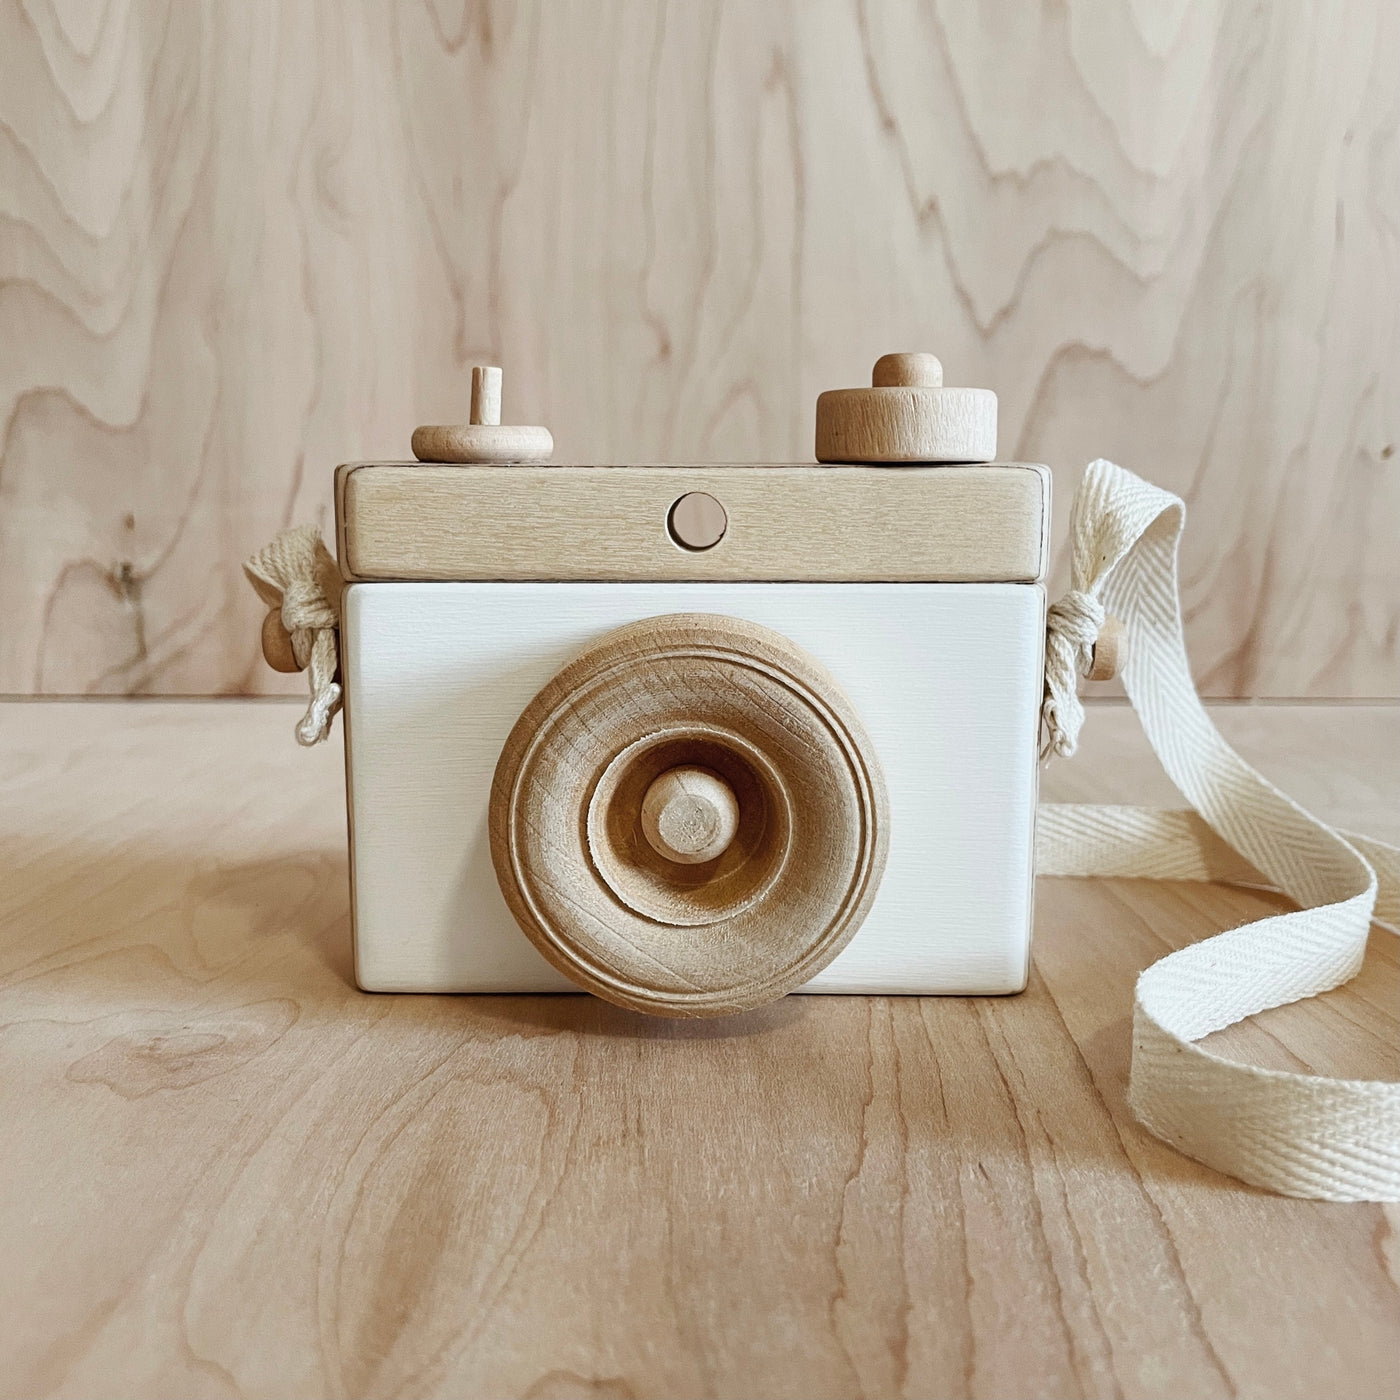 Sale Classic Camera, White